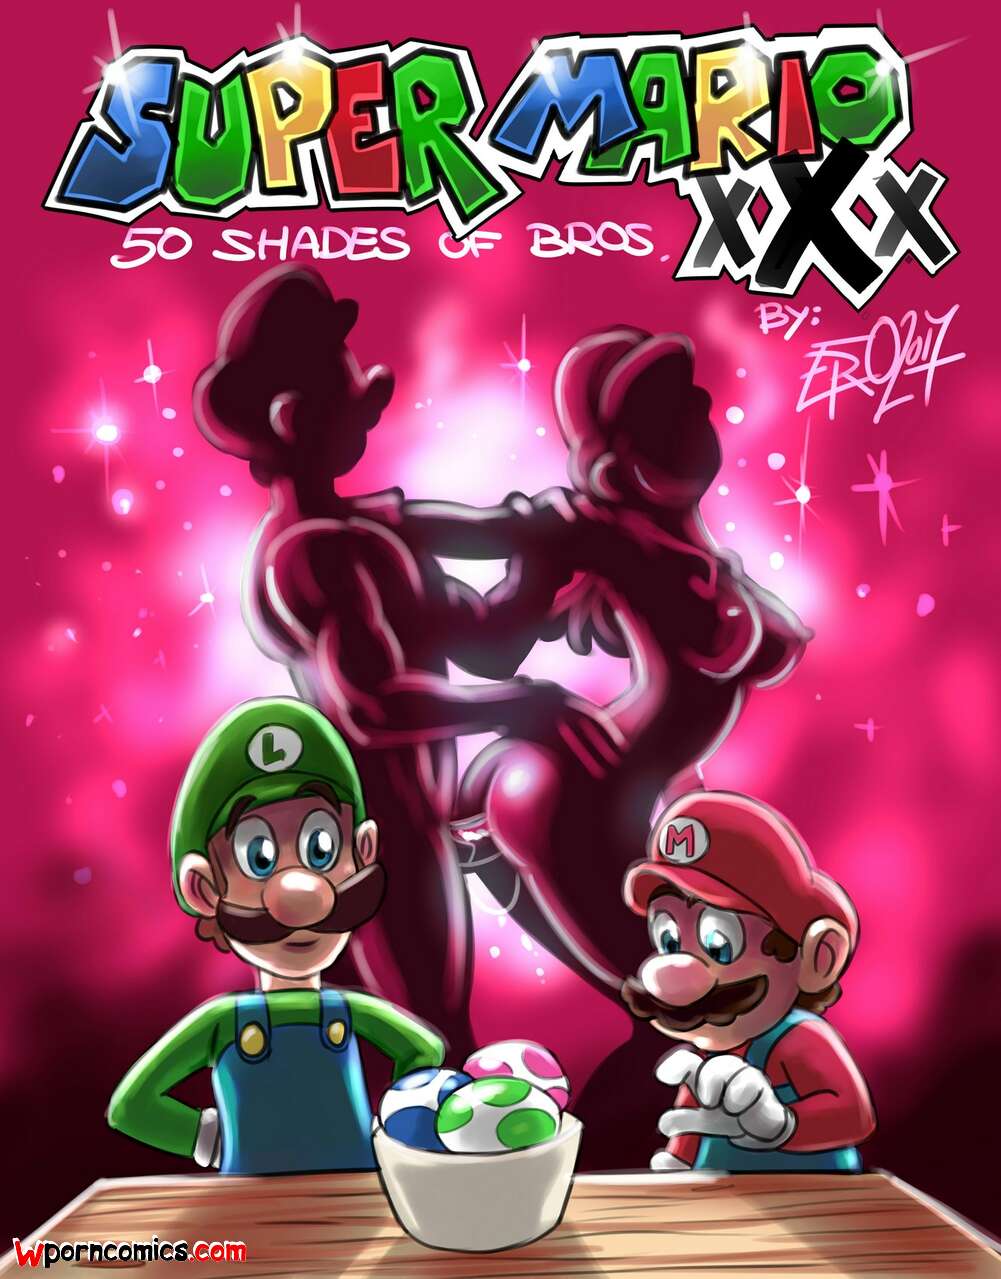 Supr Xxx - âœ…ï¸ Porn comic Super Mario xXx. 50 Shades of Bros. Psicoero. Sex comic of  the brothers | Porn comics in English for adults only | sexkomix2.com